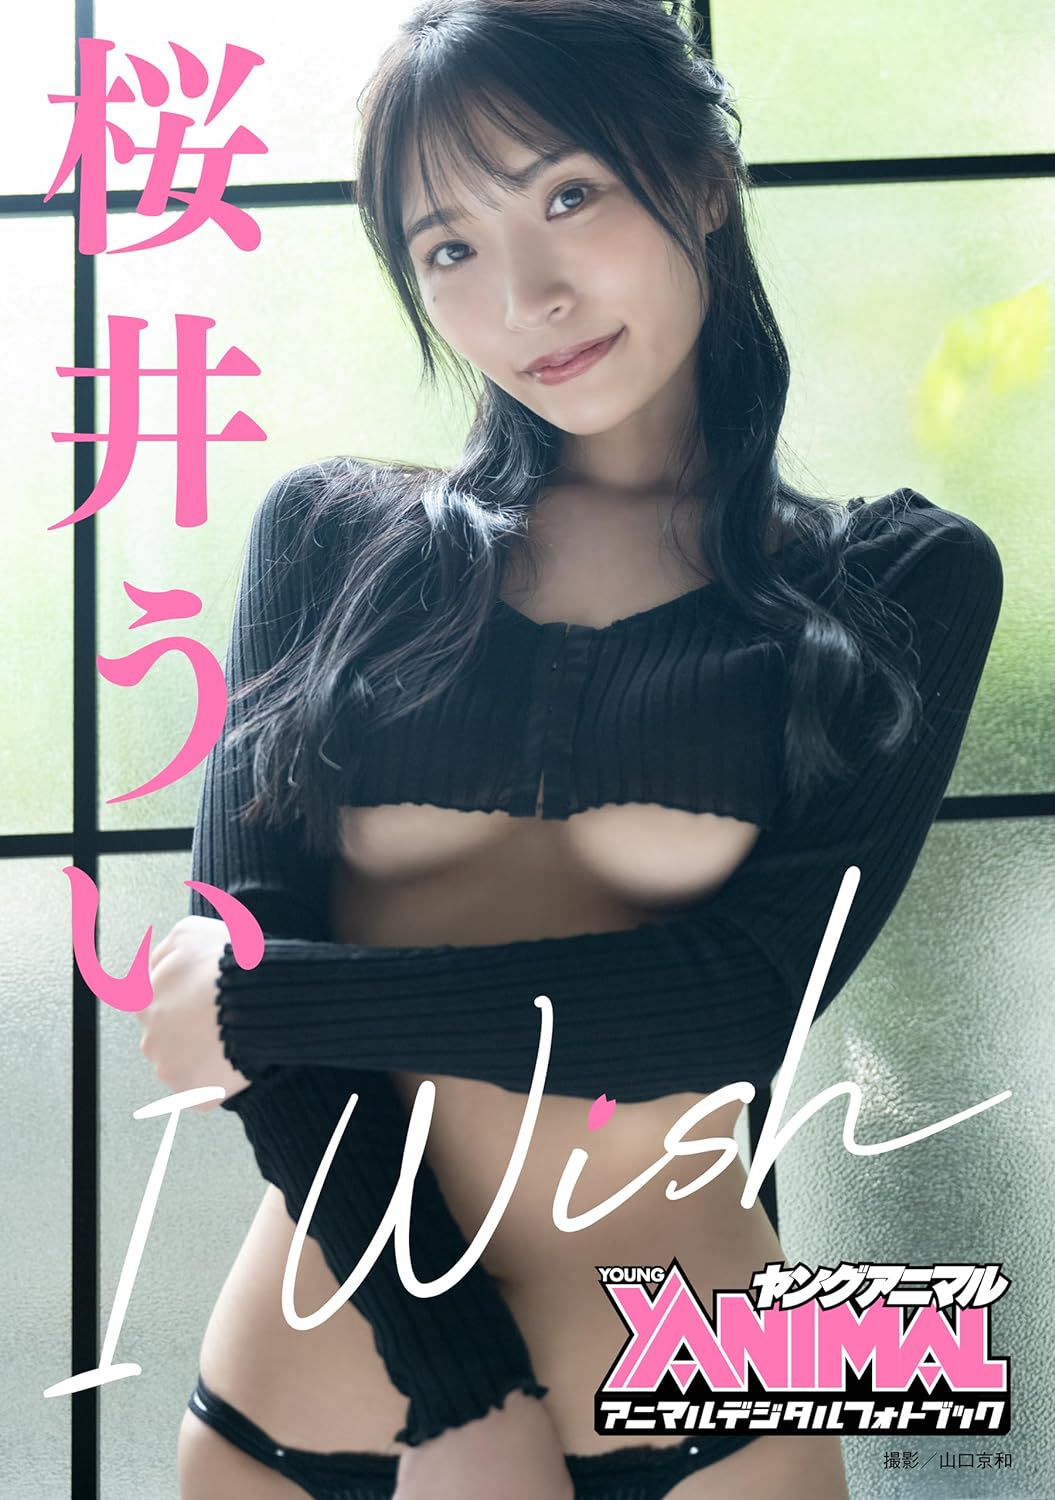 【アニマルデジタルフォトブック】桜井うい「I Wish」 Kindle版のサンプル画像